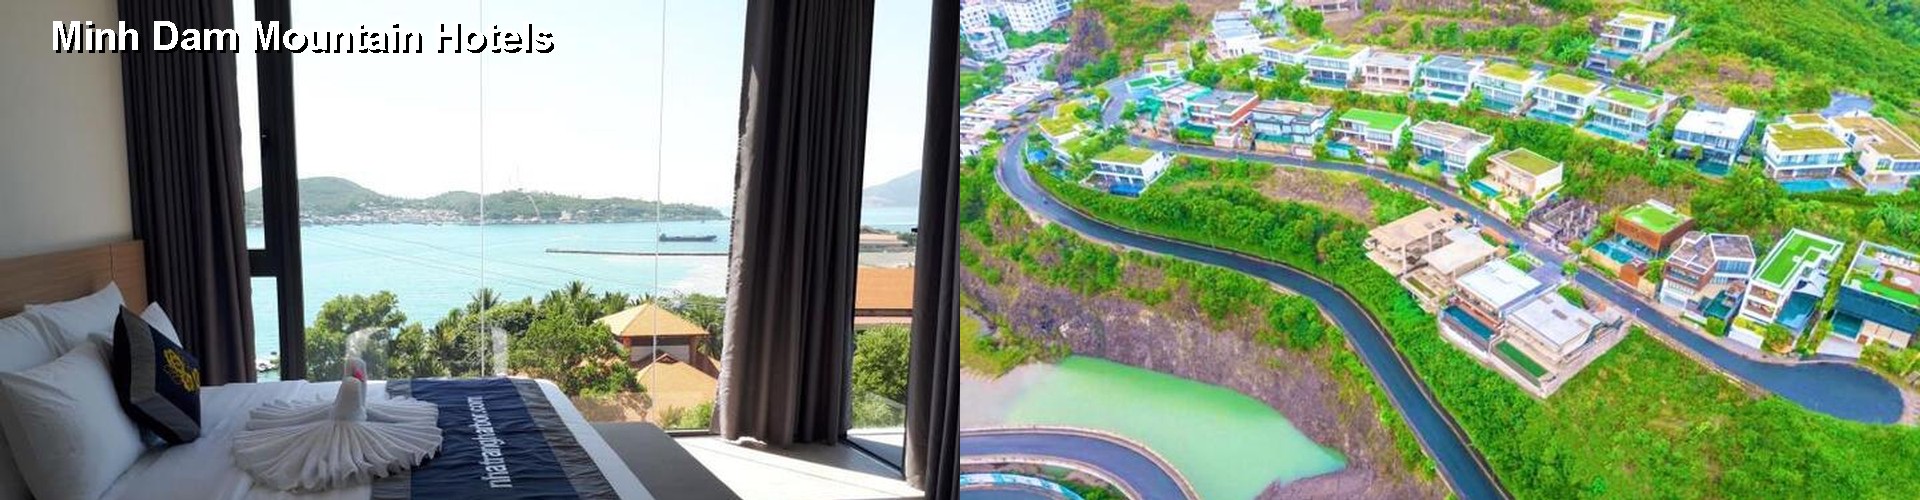 5 Best Hotels near Minh Dam Mountain